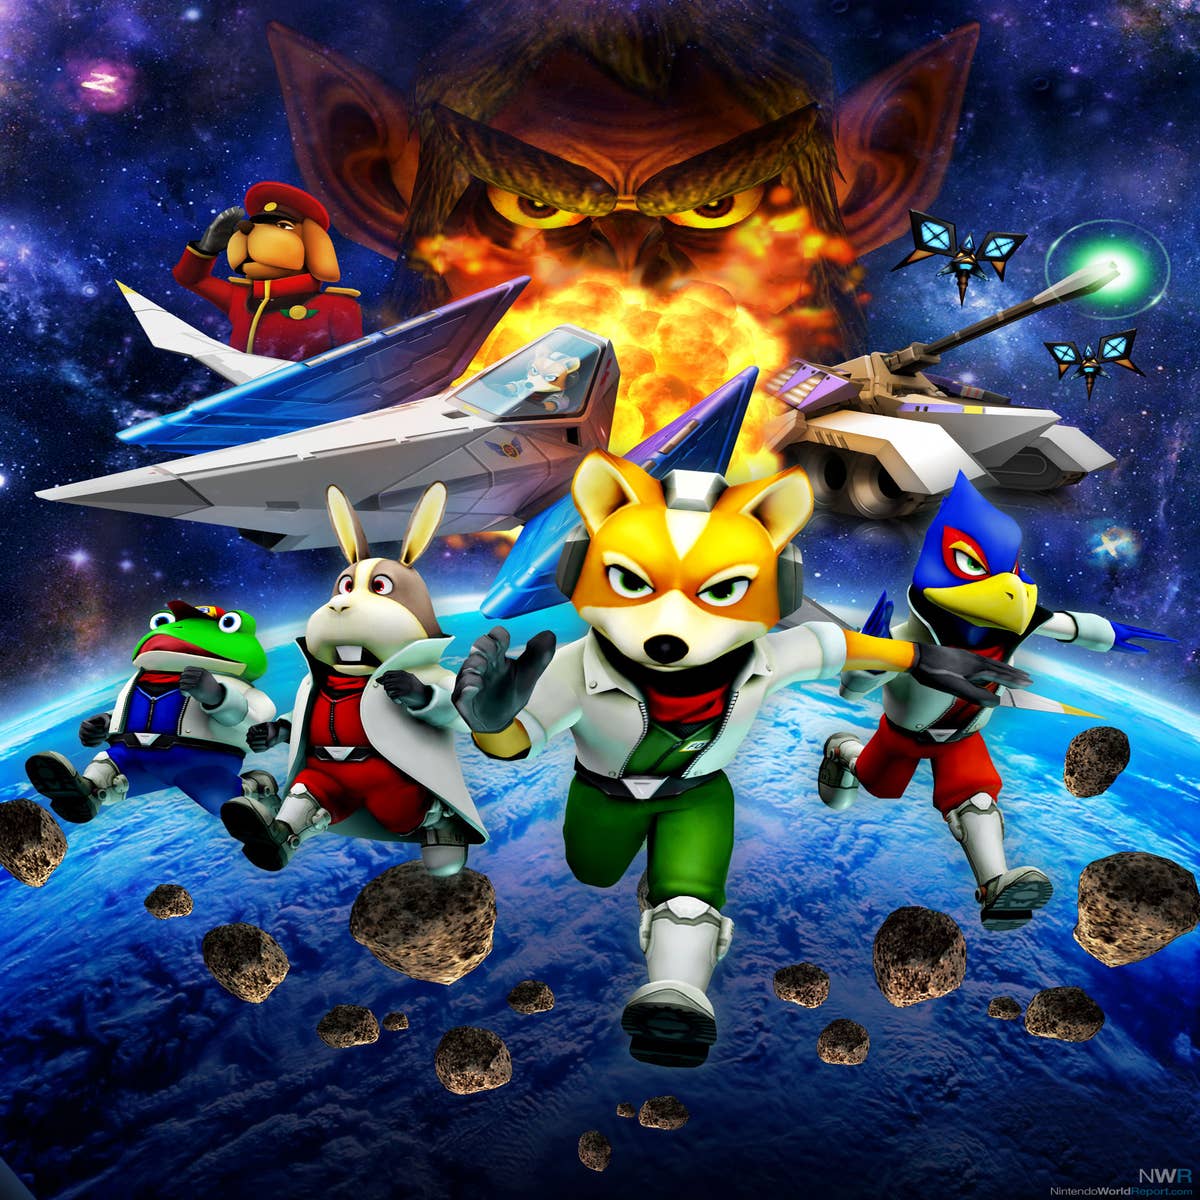 Star Fox 64 3D, Star Fox 2, star Fox Adventures, star Fox Assault